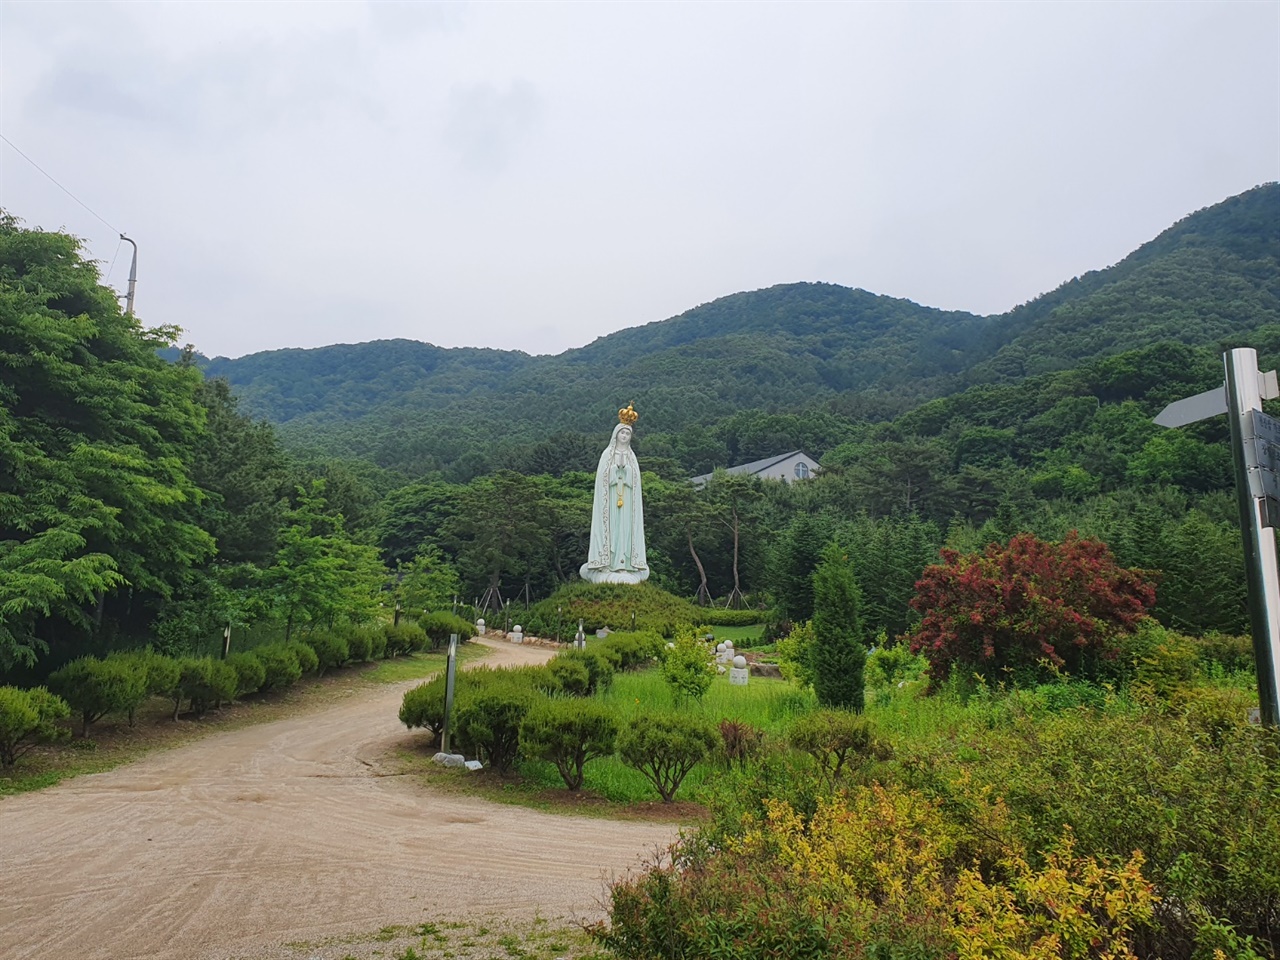 초기 천주교  전래가 이루어졌던 천진암성지 한국 천주교의 발상지라고 알려져 있는 천진암성지는 현재 100년의 계획을 세우고 아시아에서 가장 큰 성당을 건립하기 위한 준비를 하고 있었다.